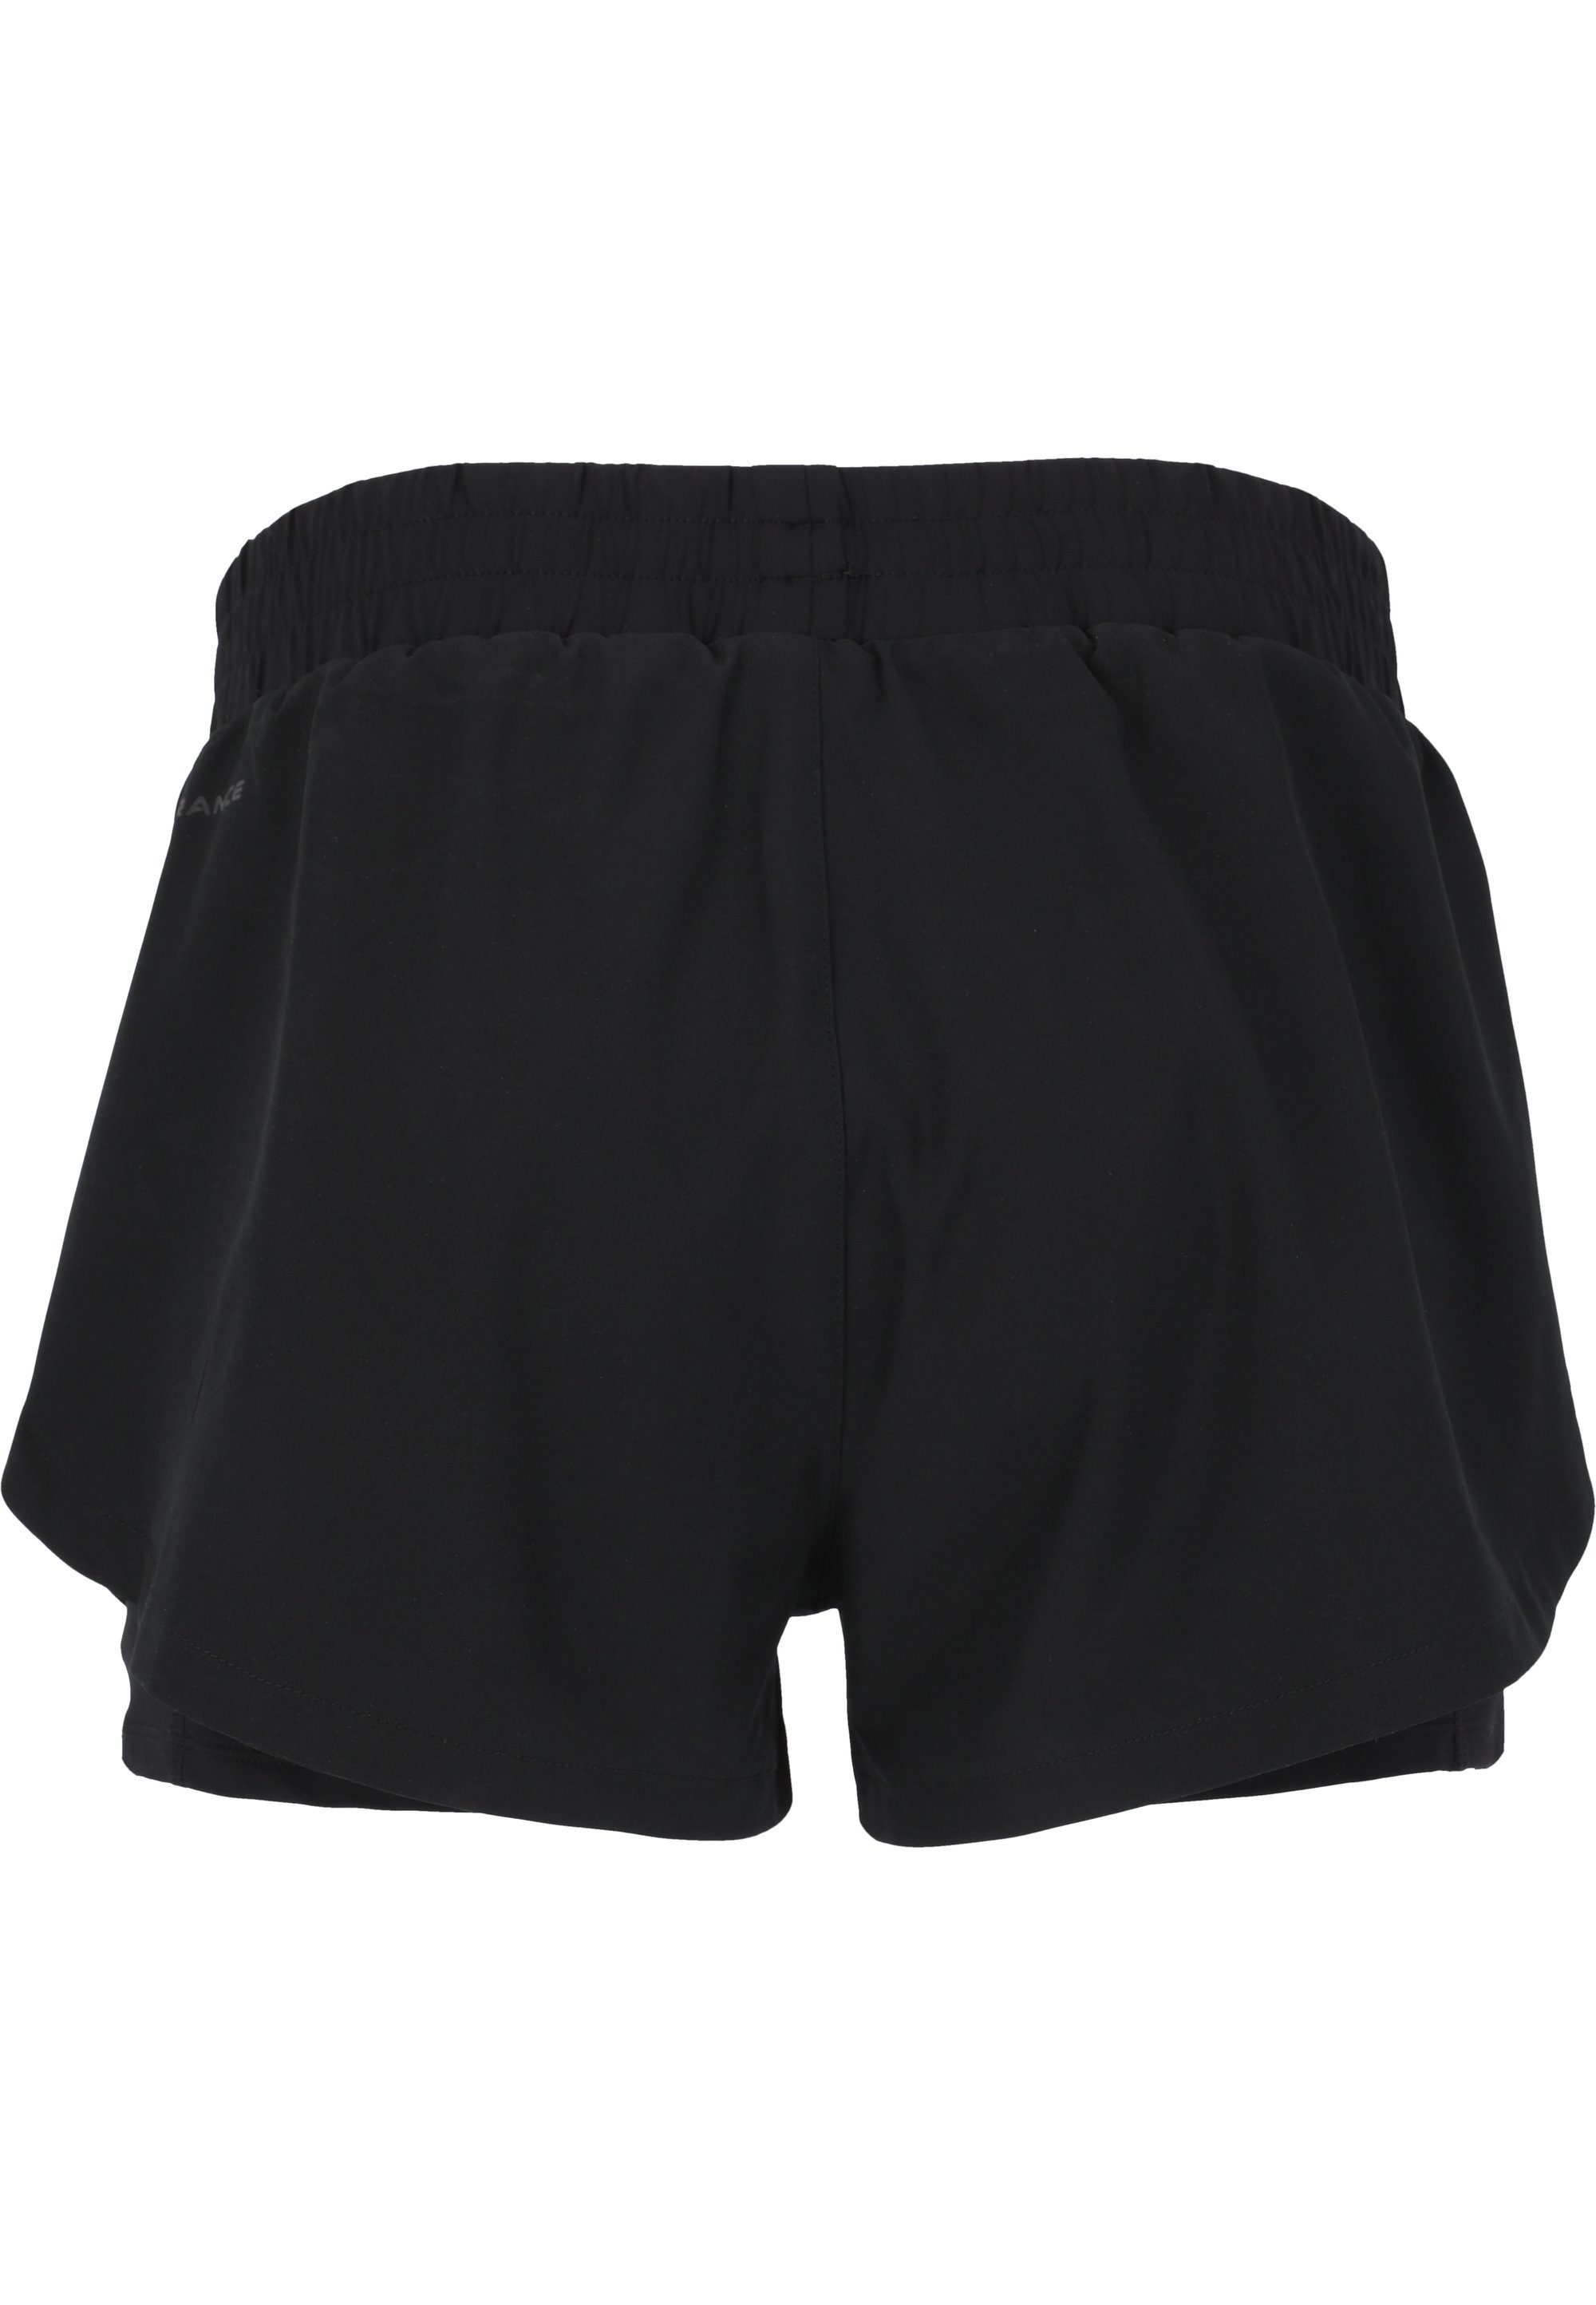 ENDURANCE praktischer schwarz Yarol Shorts 2-in-1-Funktion mit